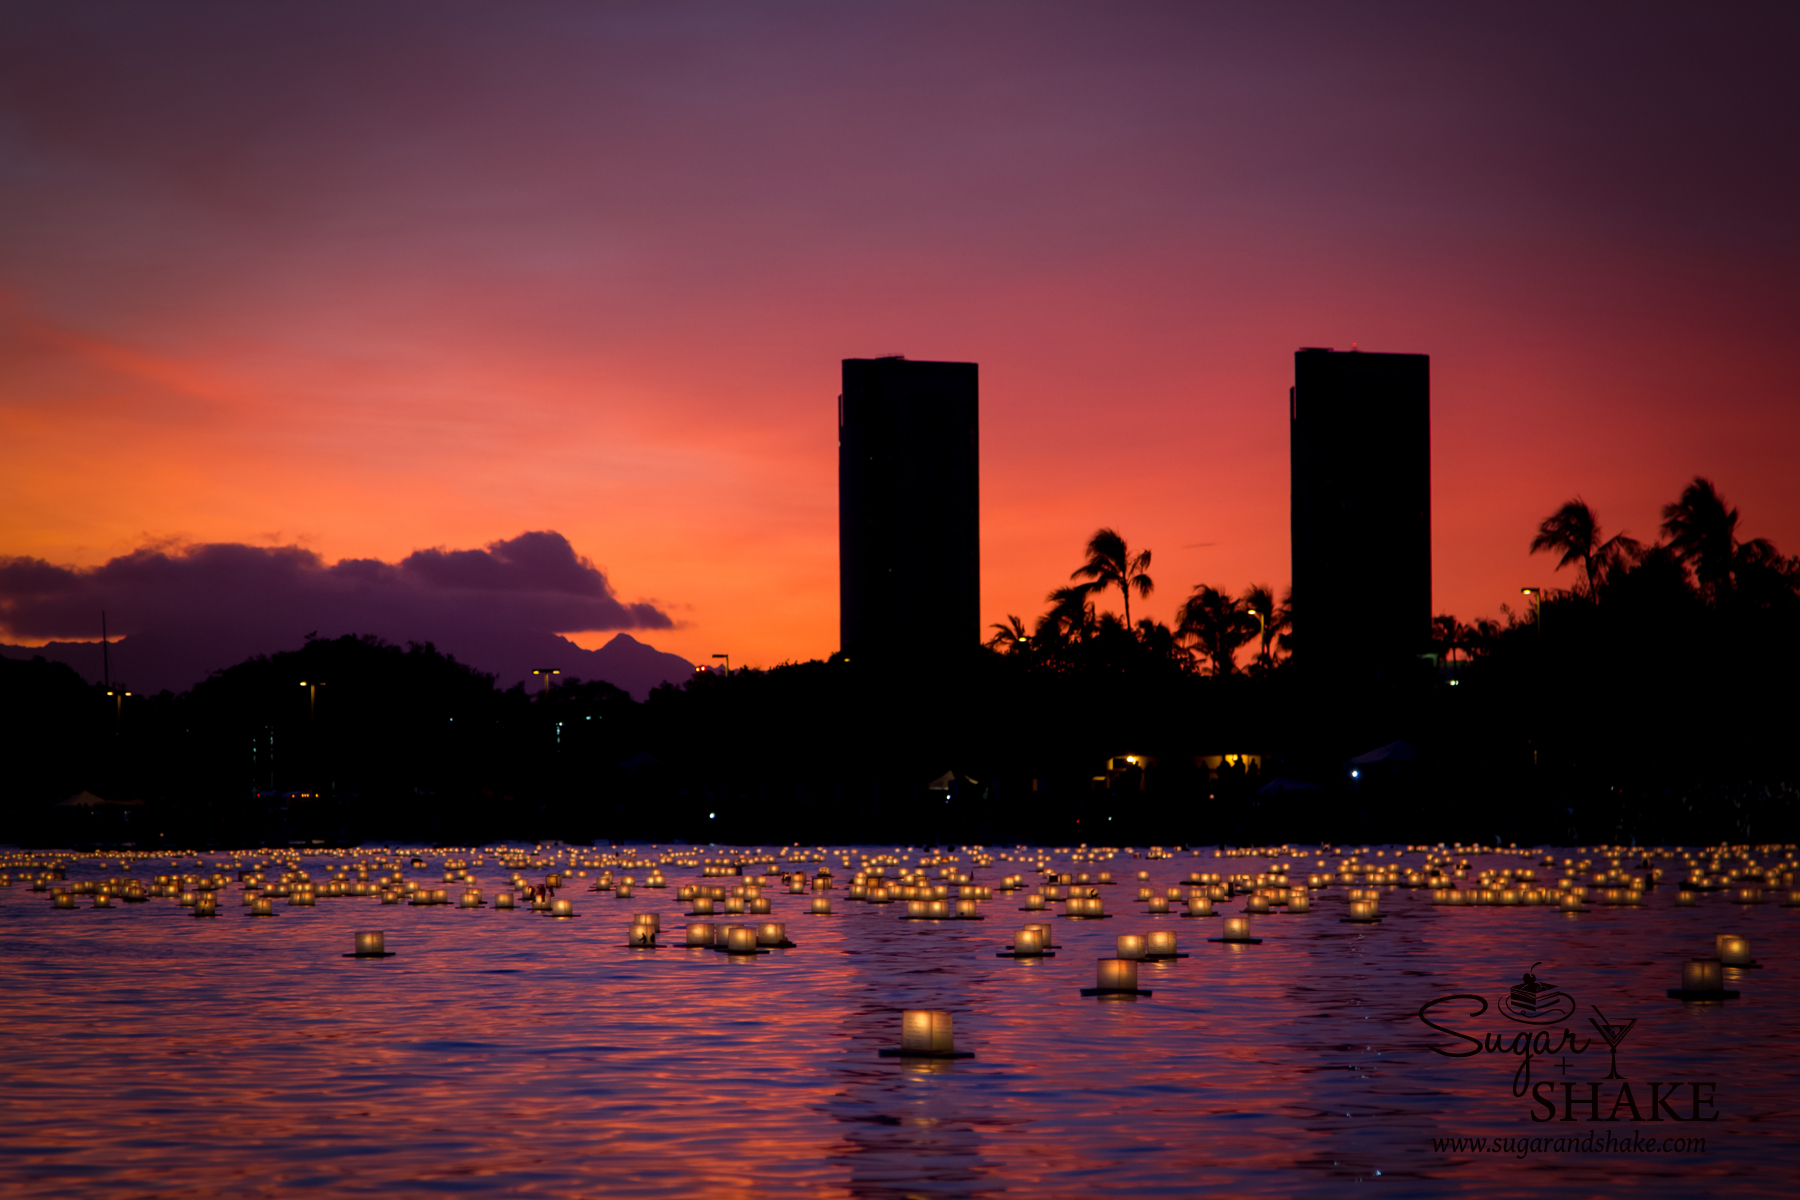 Lanterns on the water. Lantern Floating Hawaii 2013. © 2013 Sugar + Shake